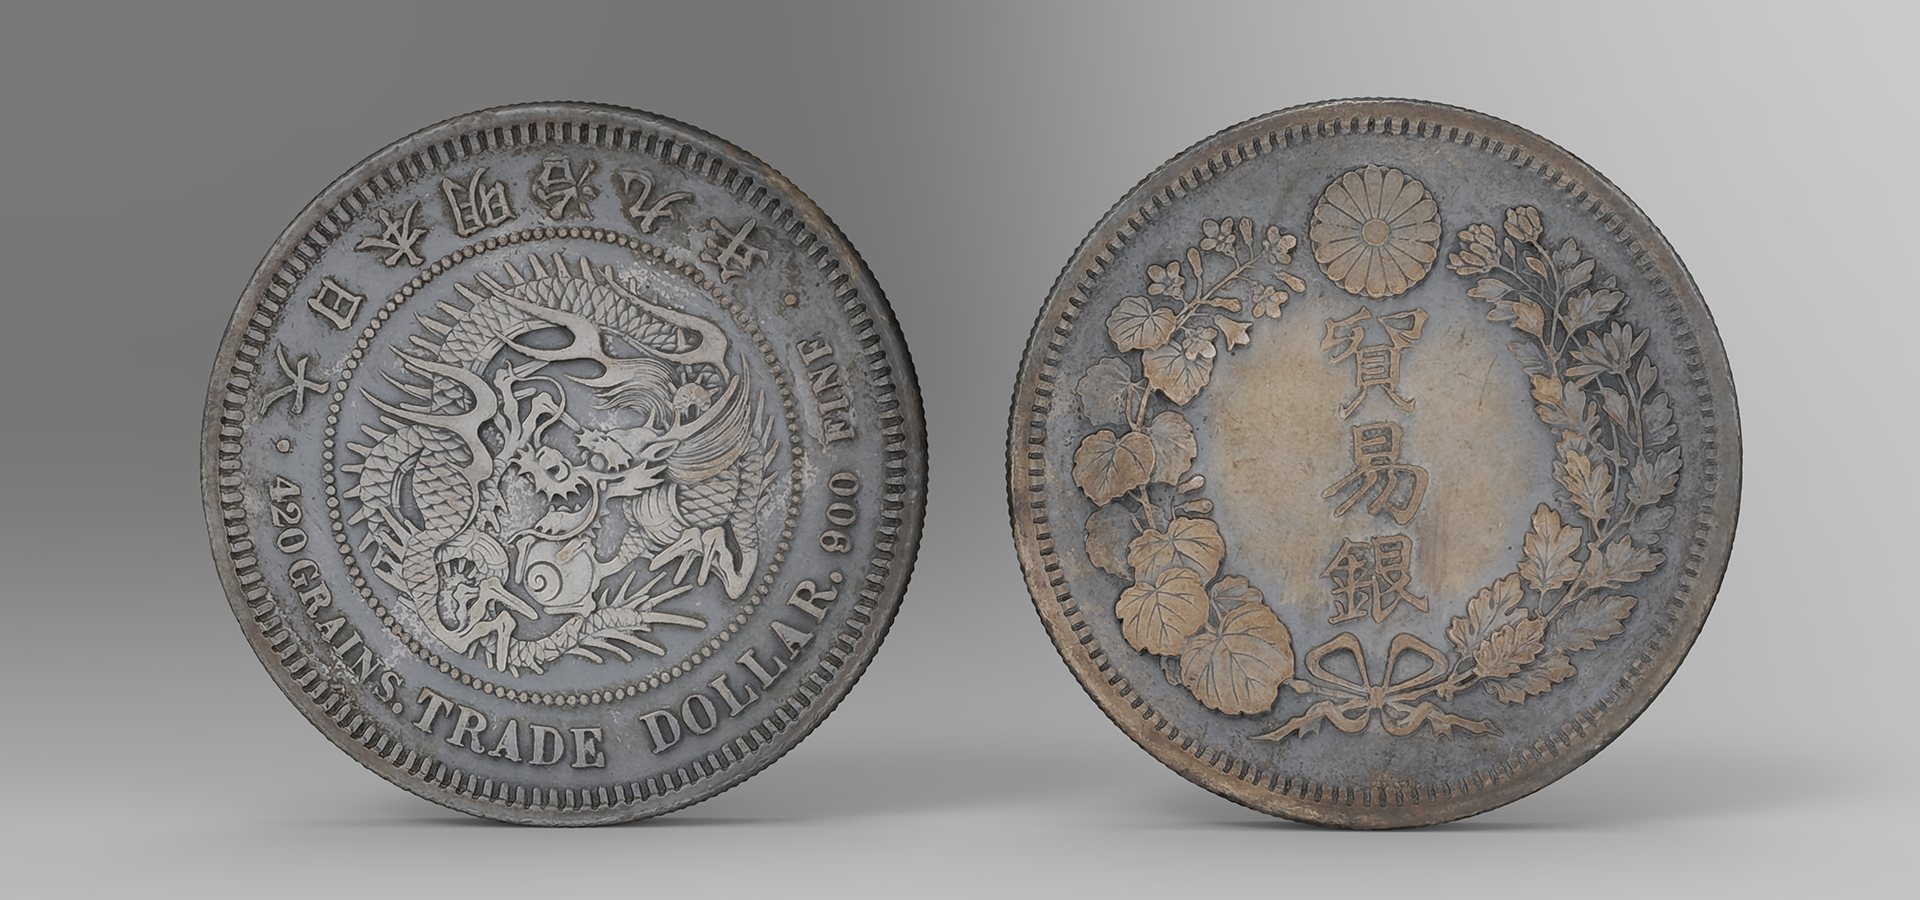 3d digital renders of coins